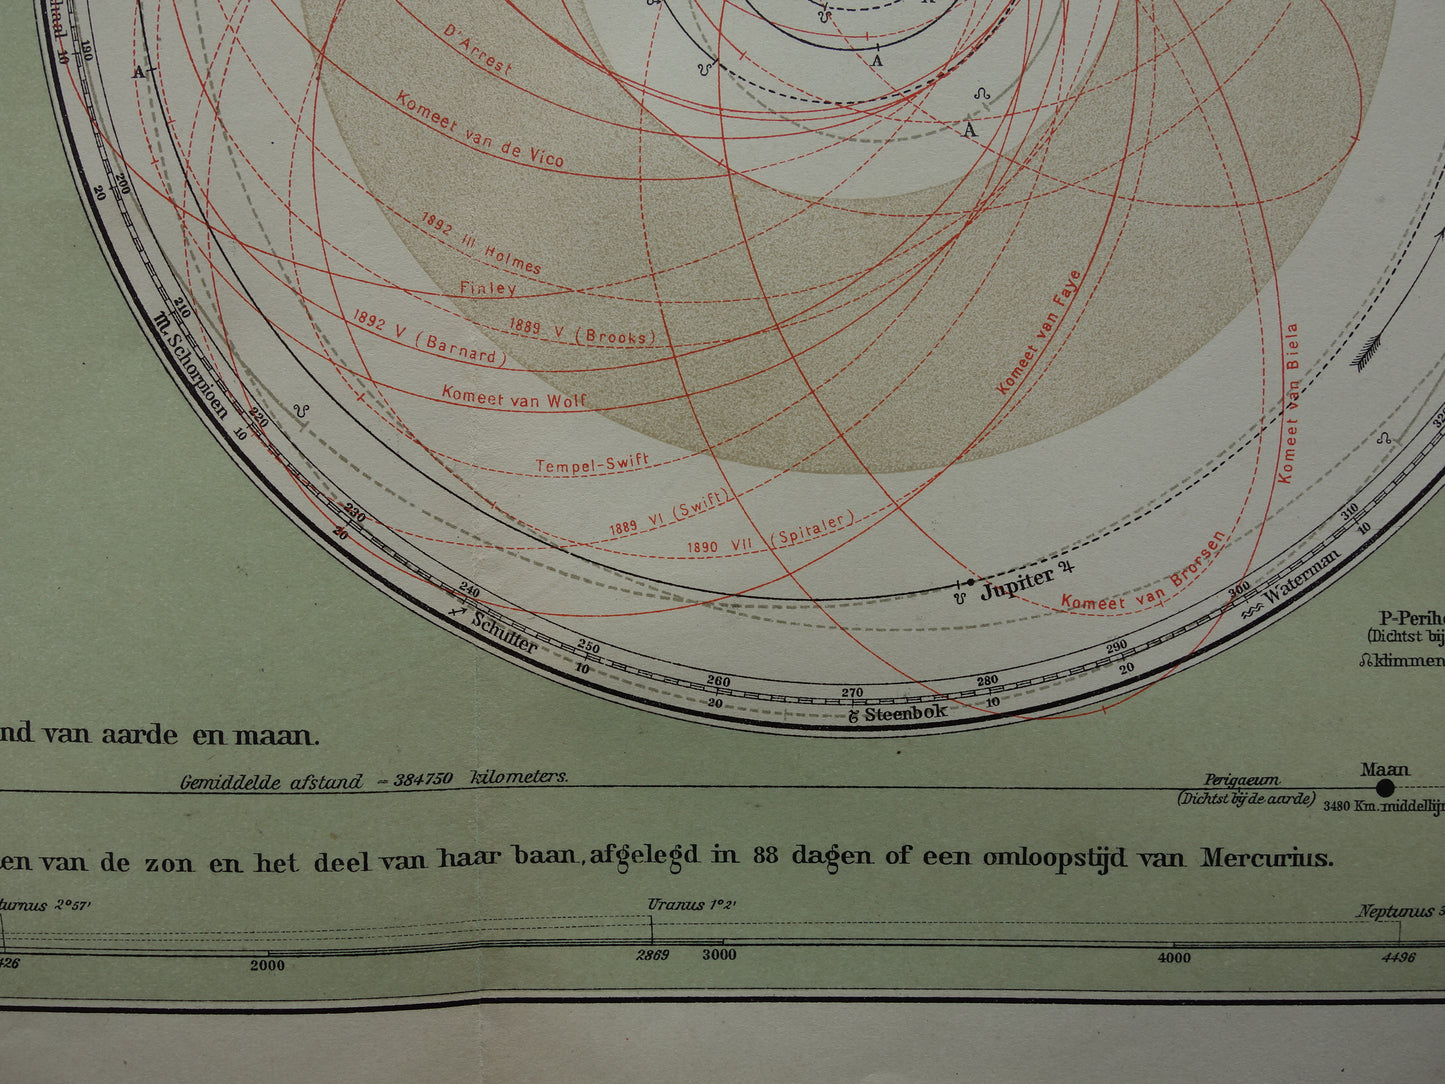 ZONNESTELSEL Oude Nederlandse prent - 1910 Originele antieke print planeten en hun baan om de zon - Vintage astronomie illustratie